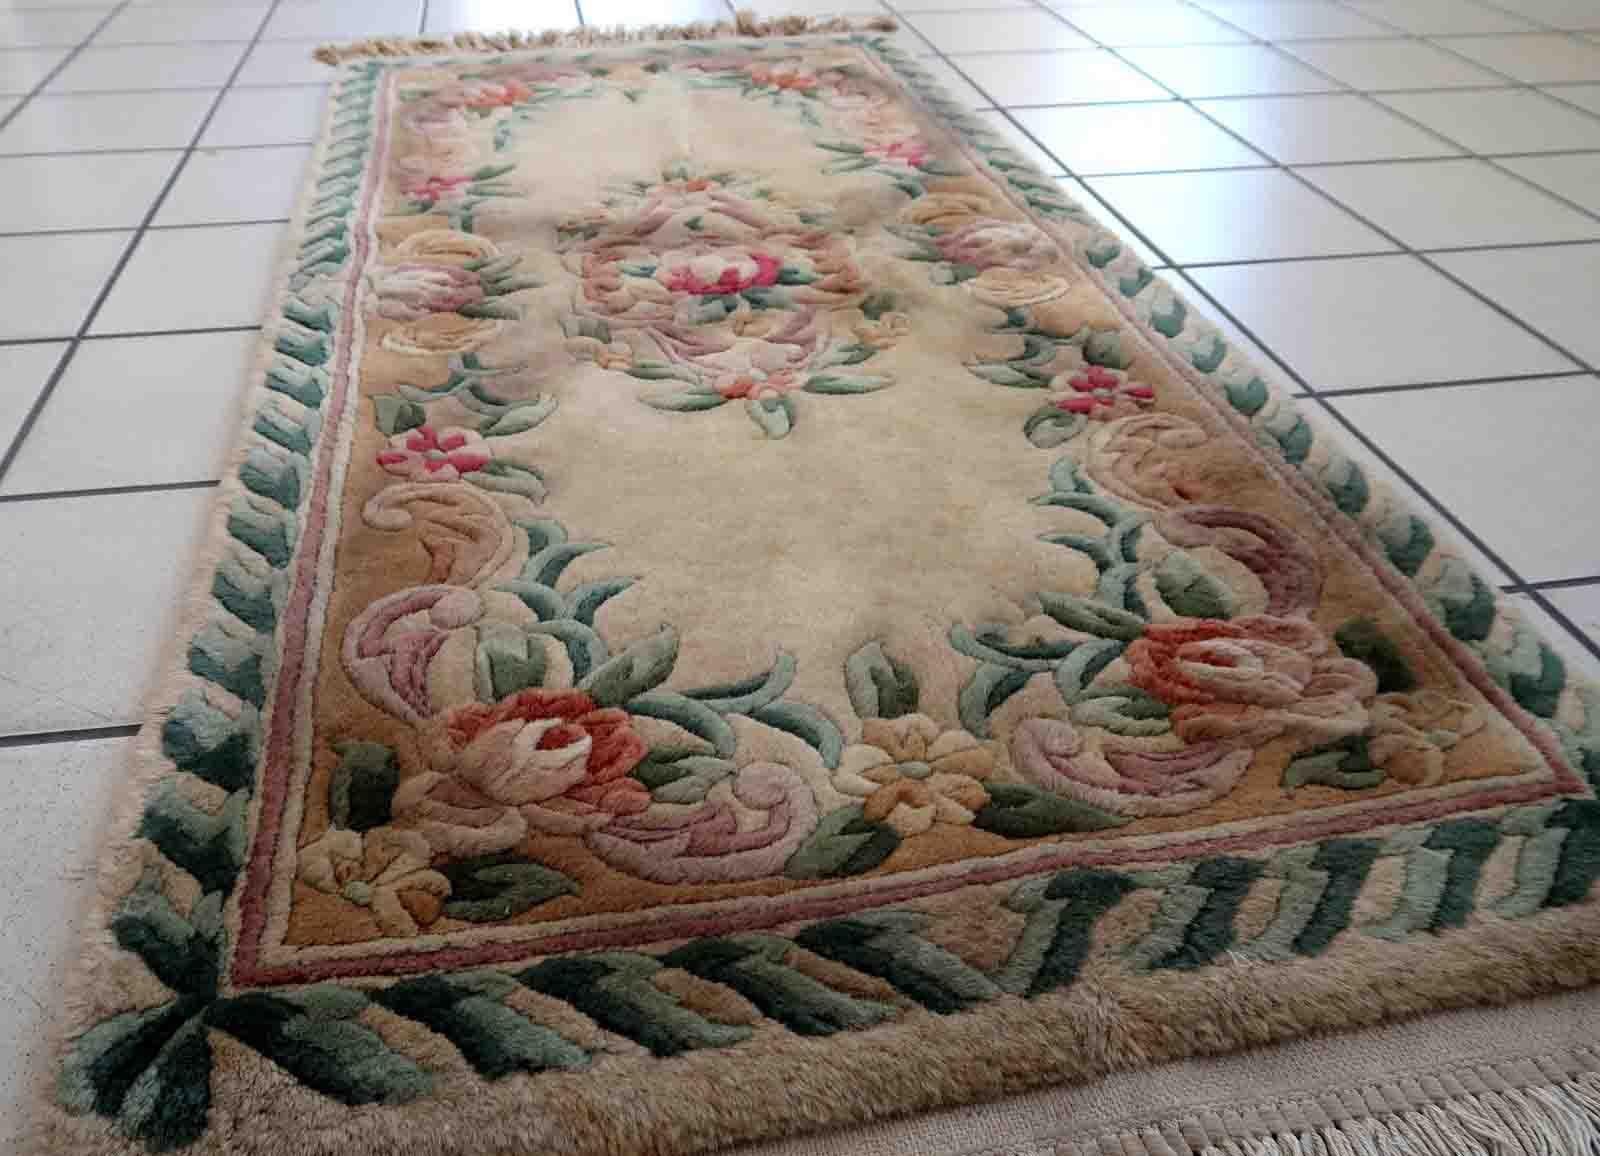 Tapis chinois Art déco vintage fait à la main en couleurs beige, vert et rouge. Le tapis est de la fin du 20ème siècle en bon état d'origine. Ce tapis présente un motif floral classique avec une touche de style français.

-état : original